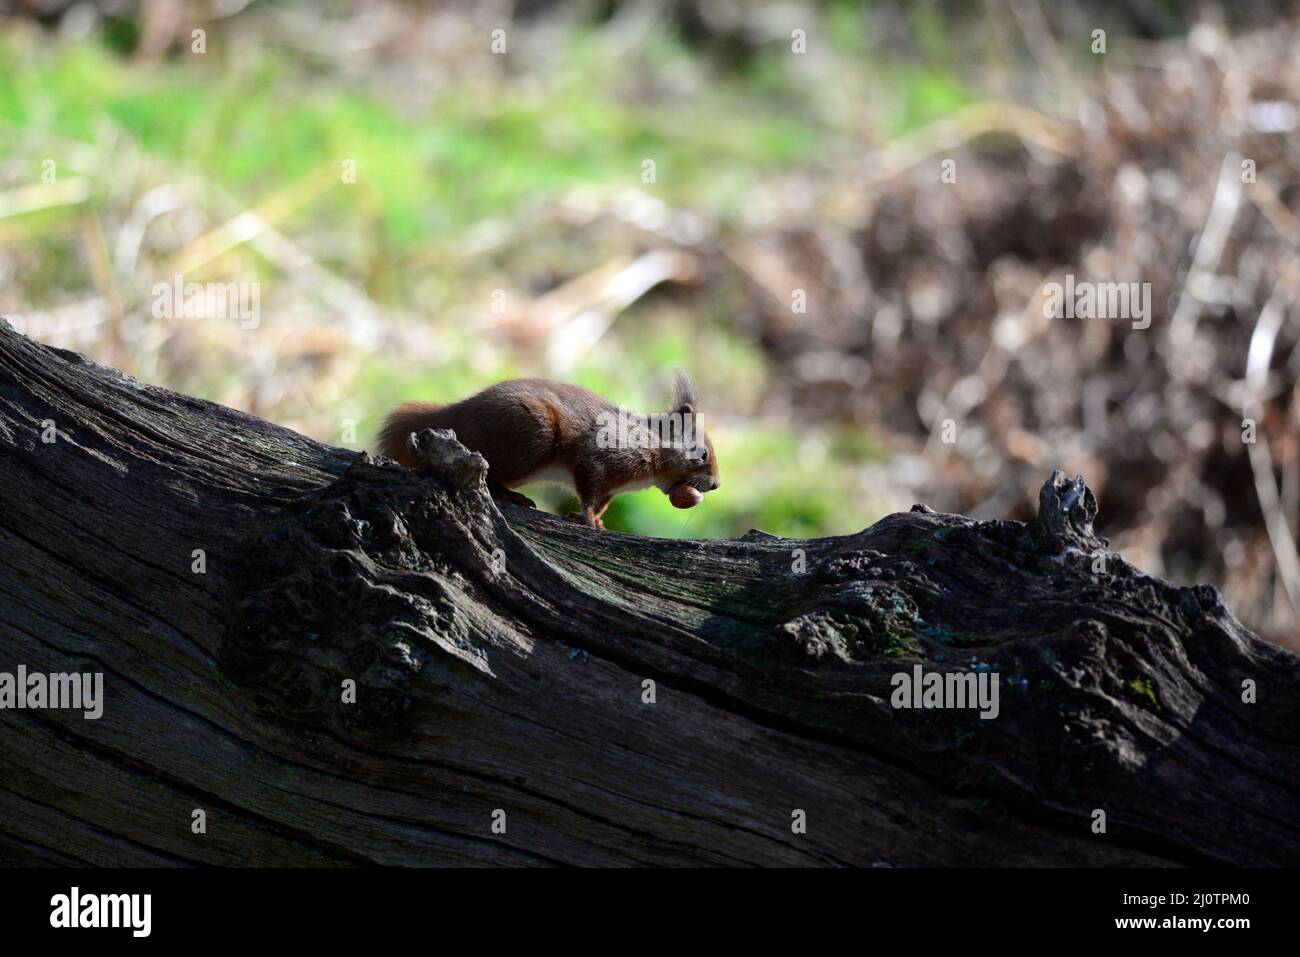 red squirrel or Sciurus vulgaris Stock Photo